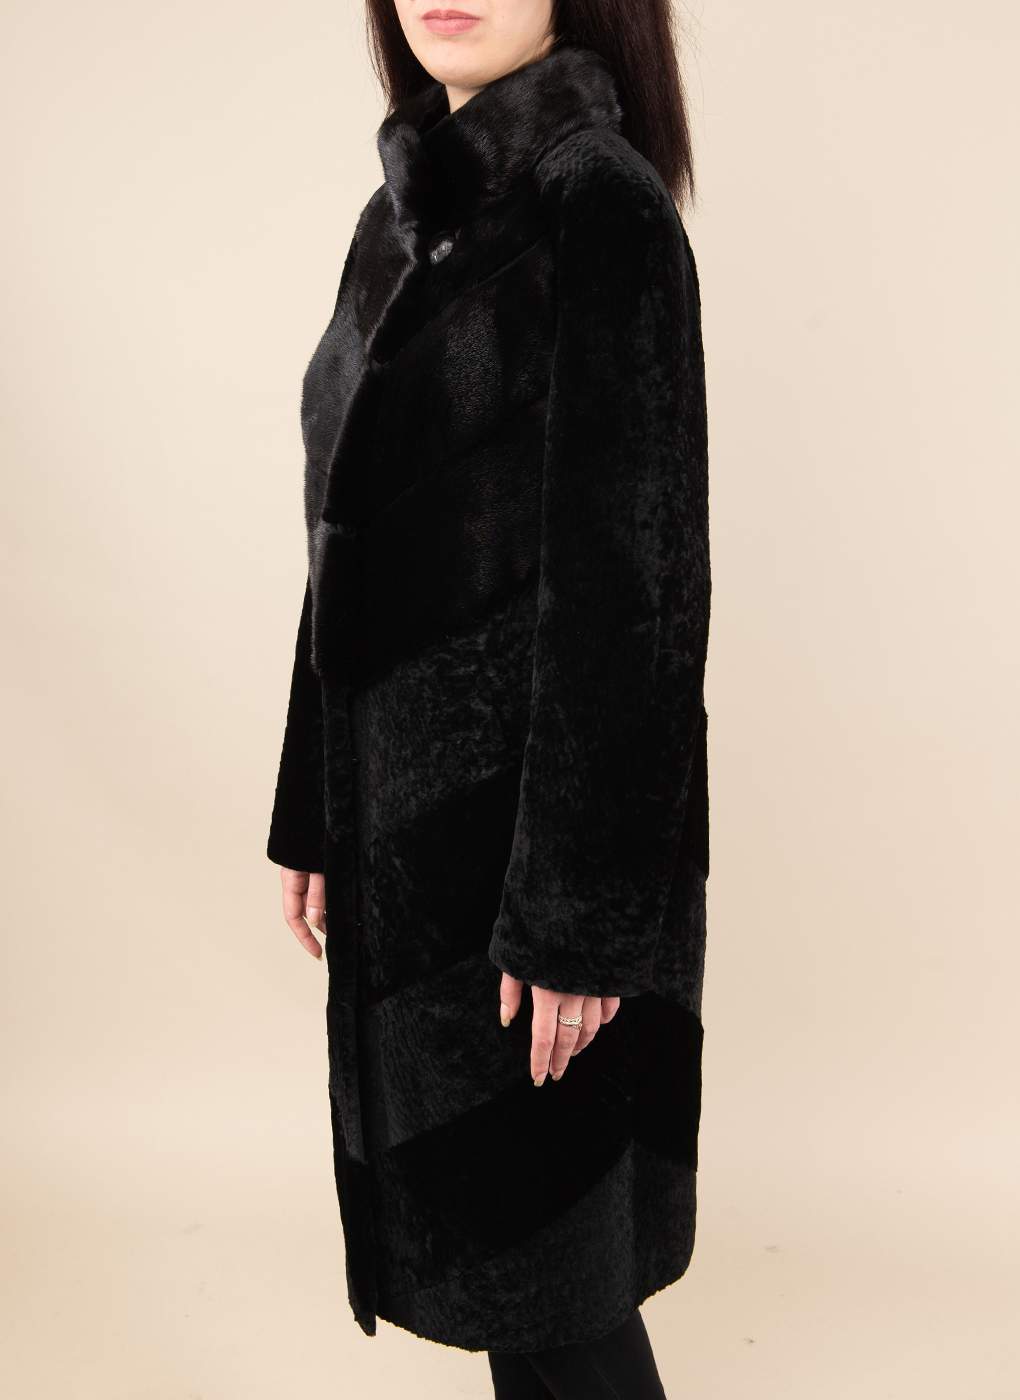 Пальто женское Alfafur 49530 черное 46 RU